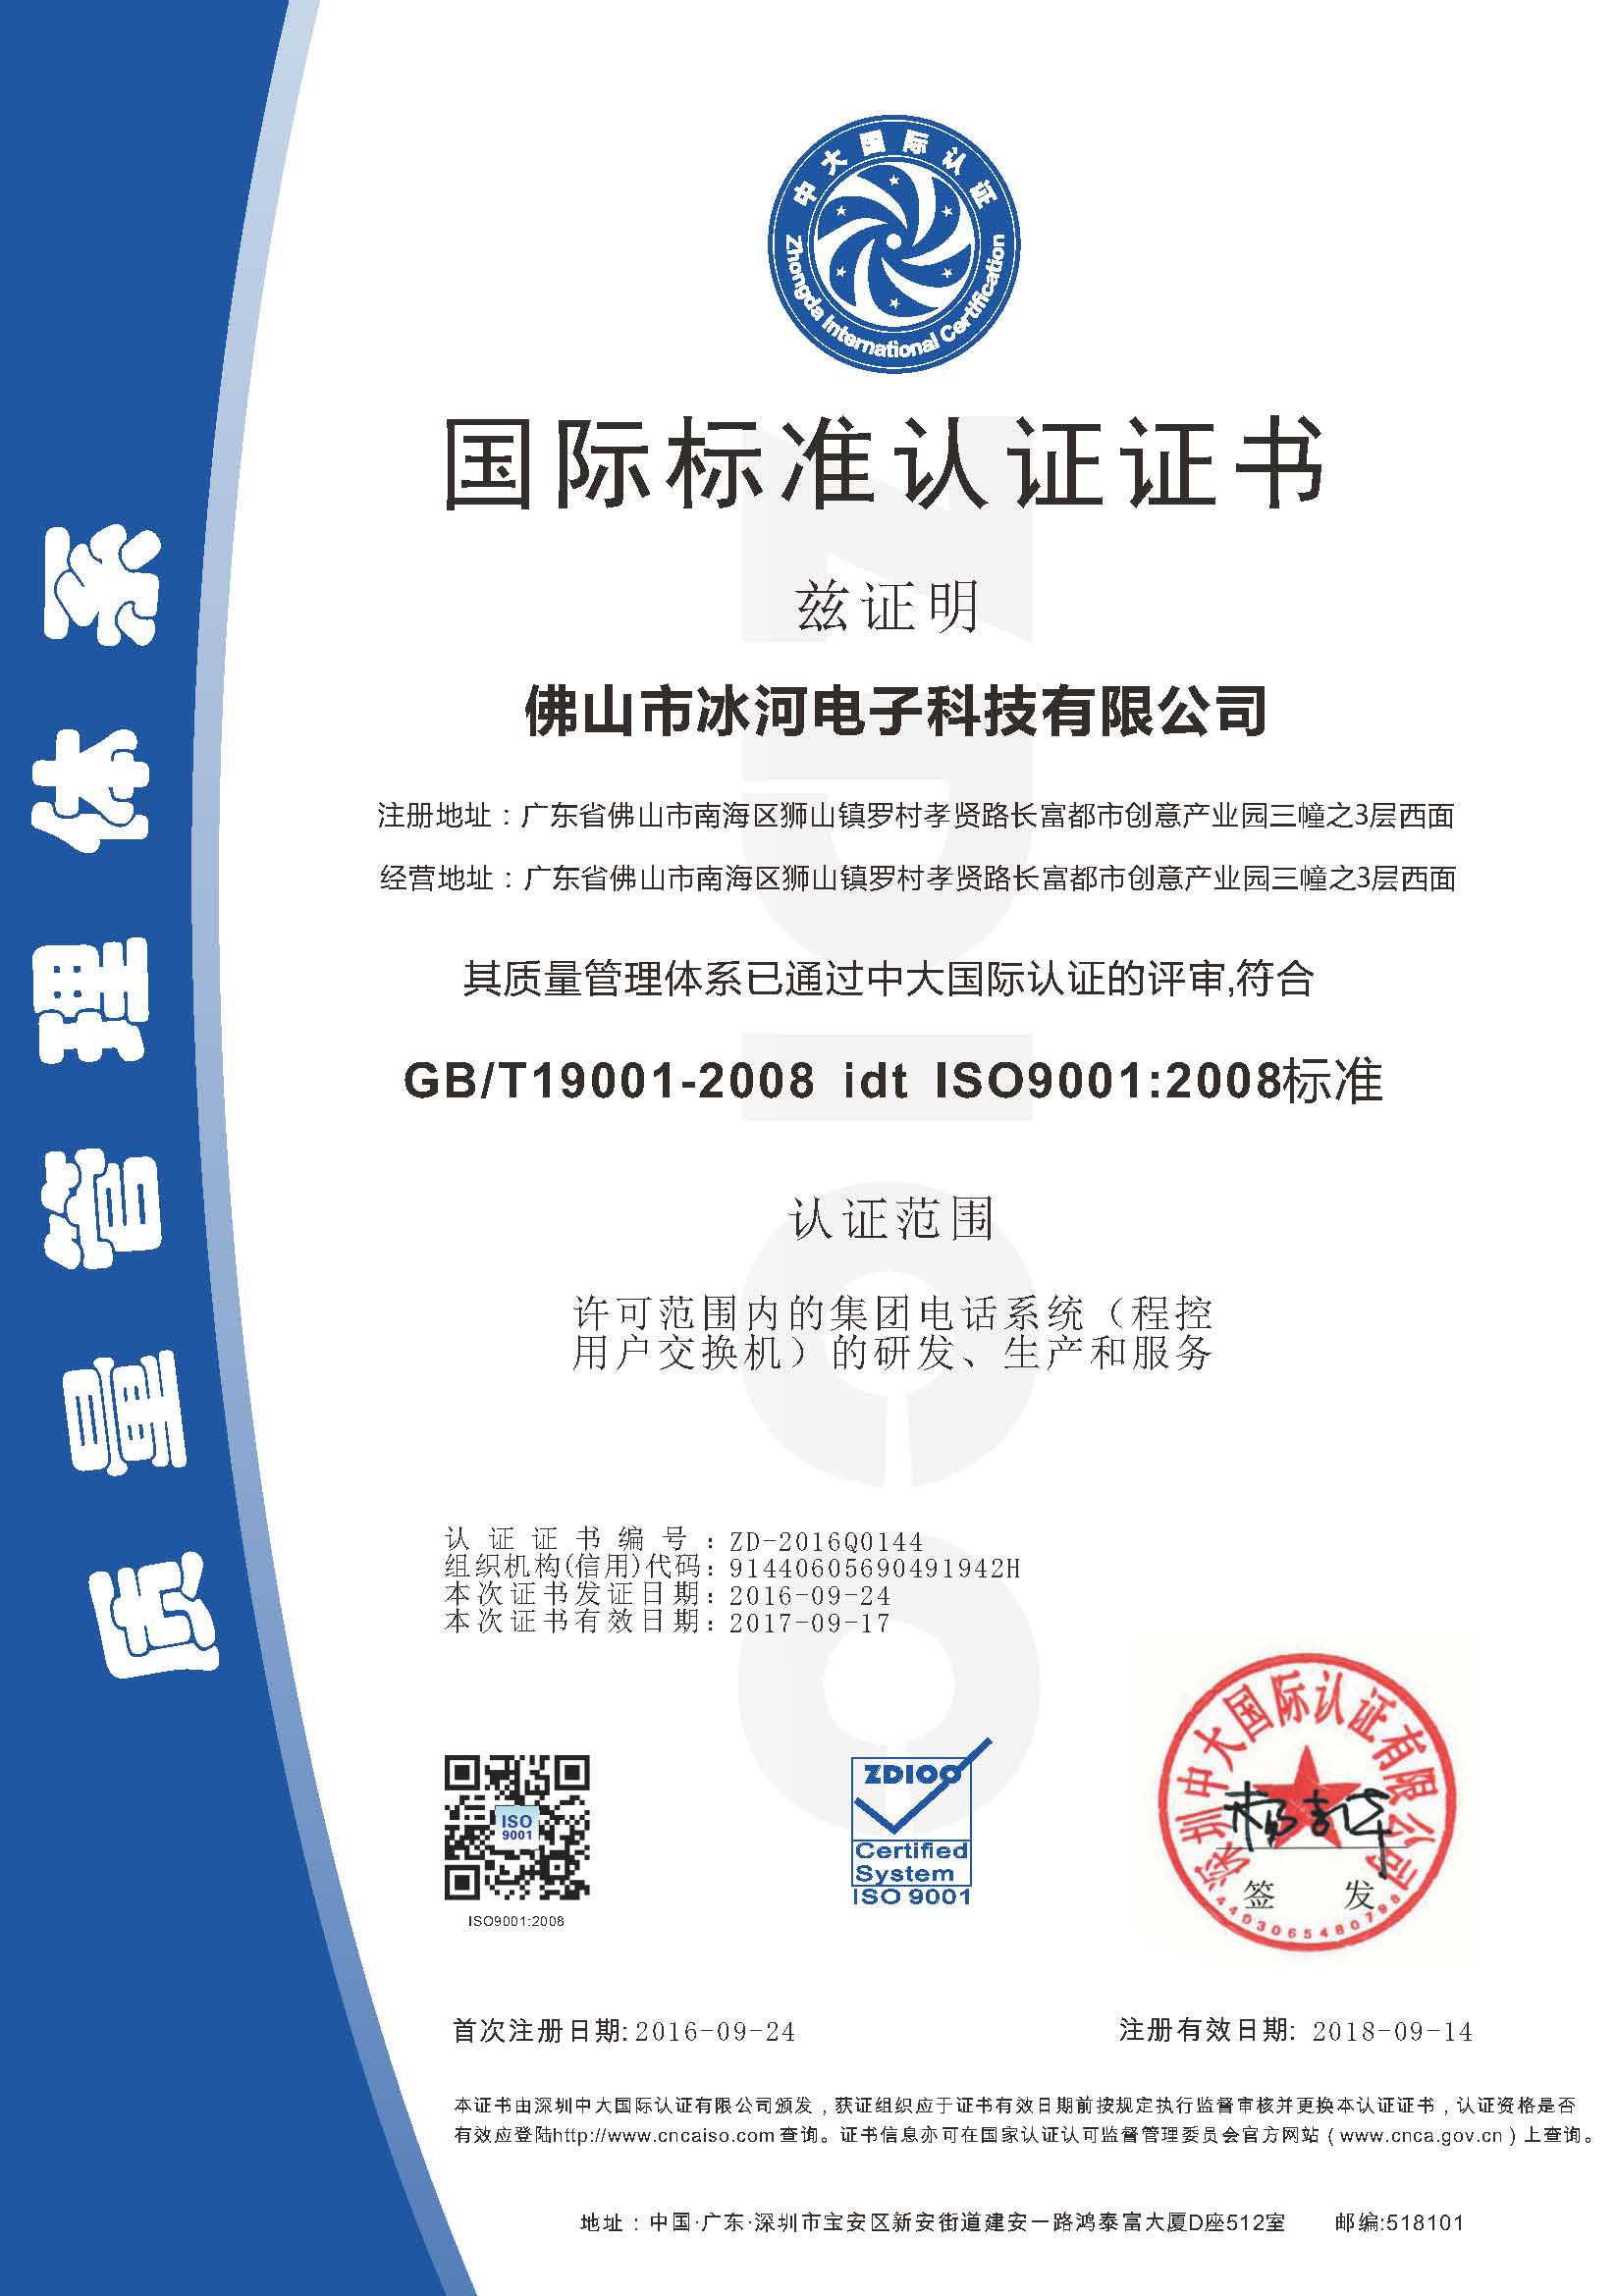 佛山市冰河電子(zǐ)科技有限公司ISO證書-中文.jpg